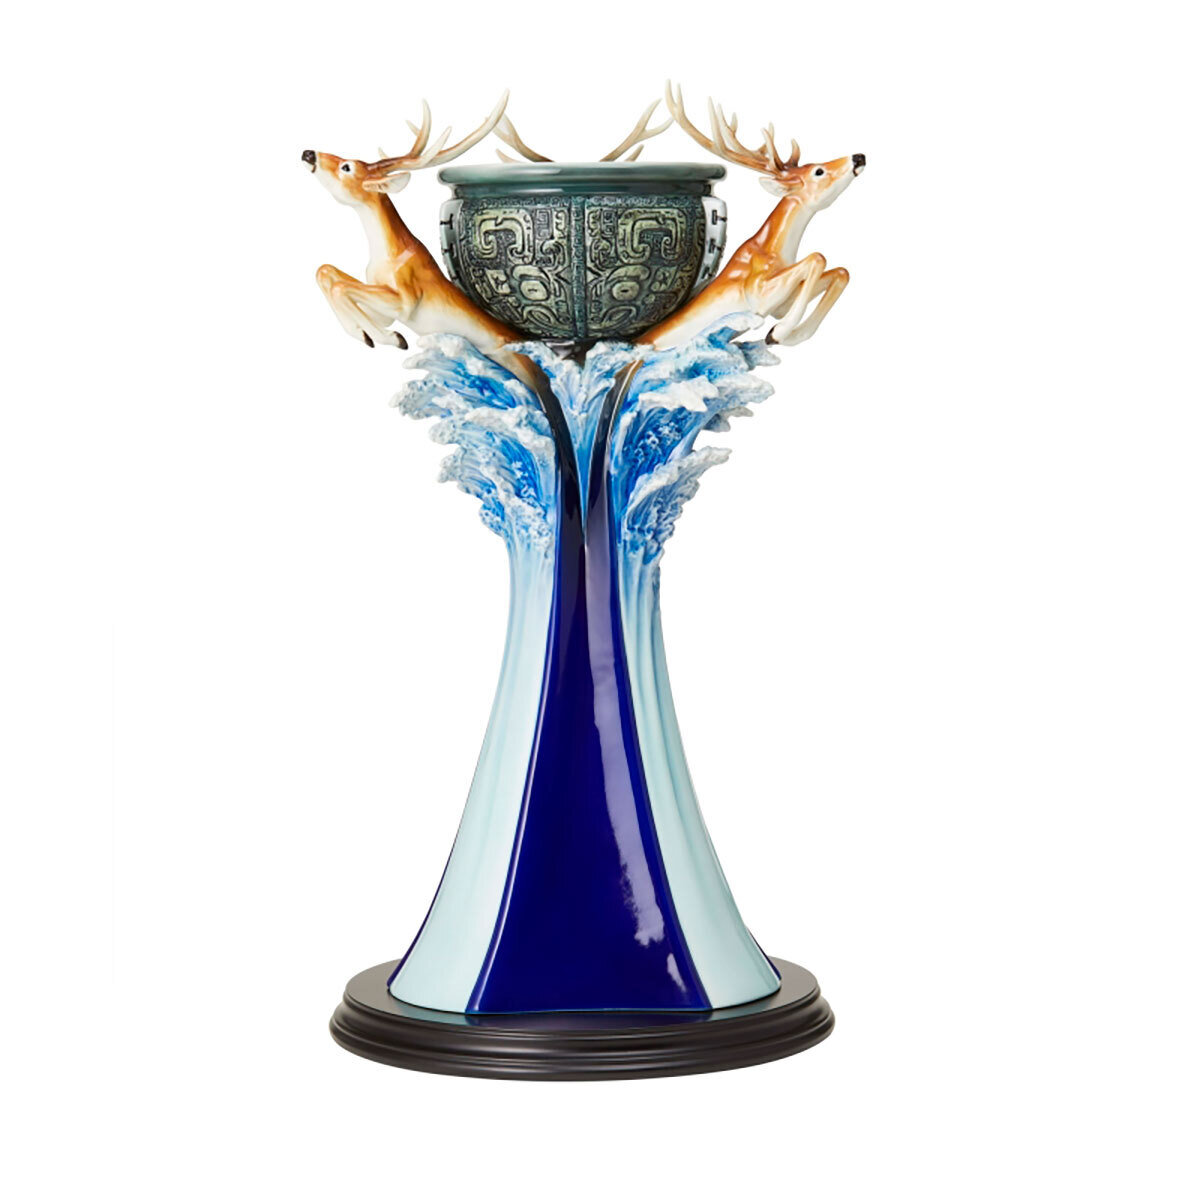 Franz Porcelain Golden Age Deer Design Sculptured Porcelain Vase With Wooden Base FZ03868